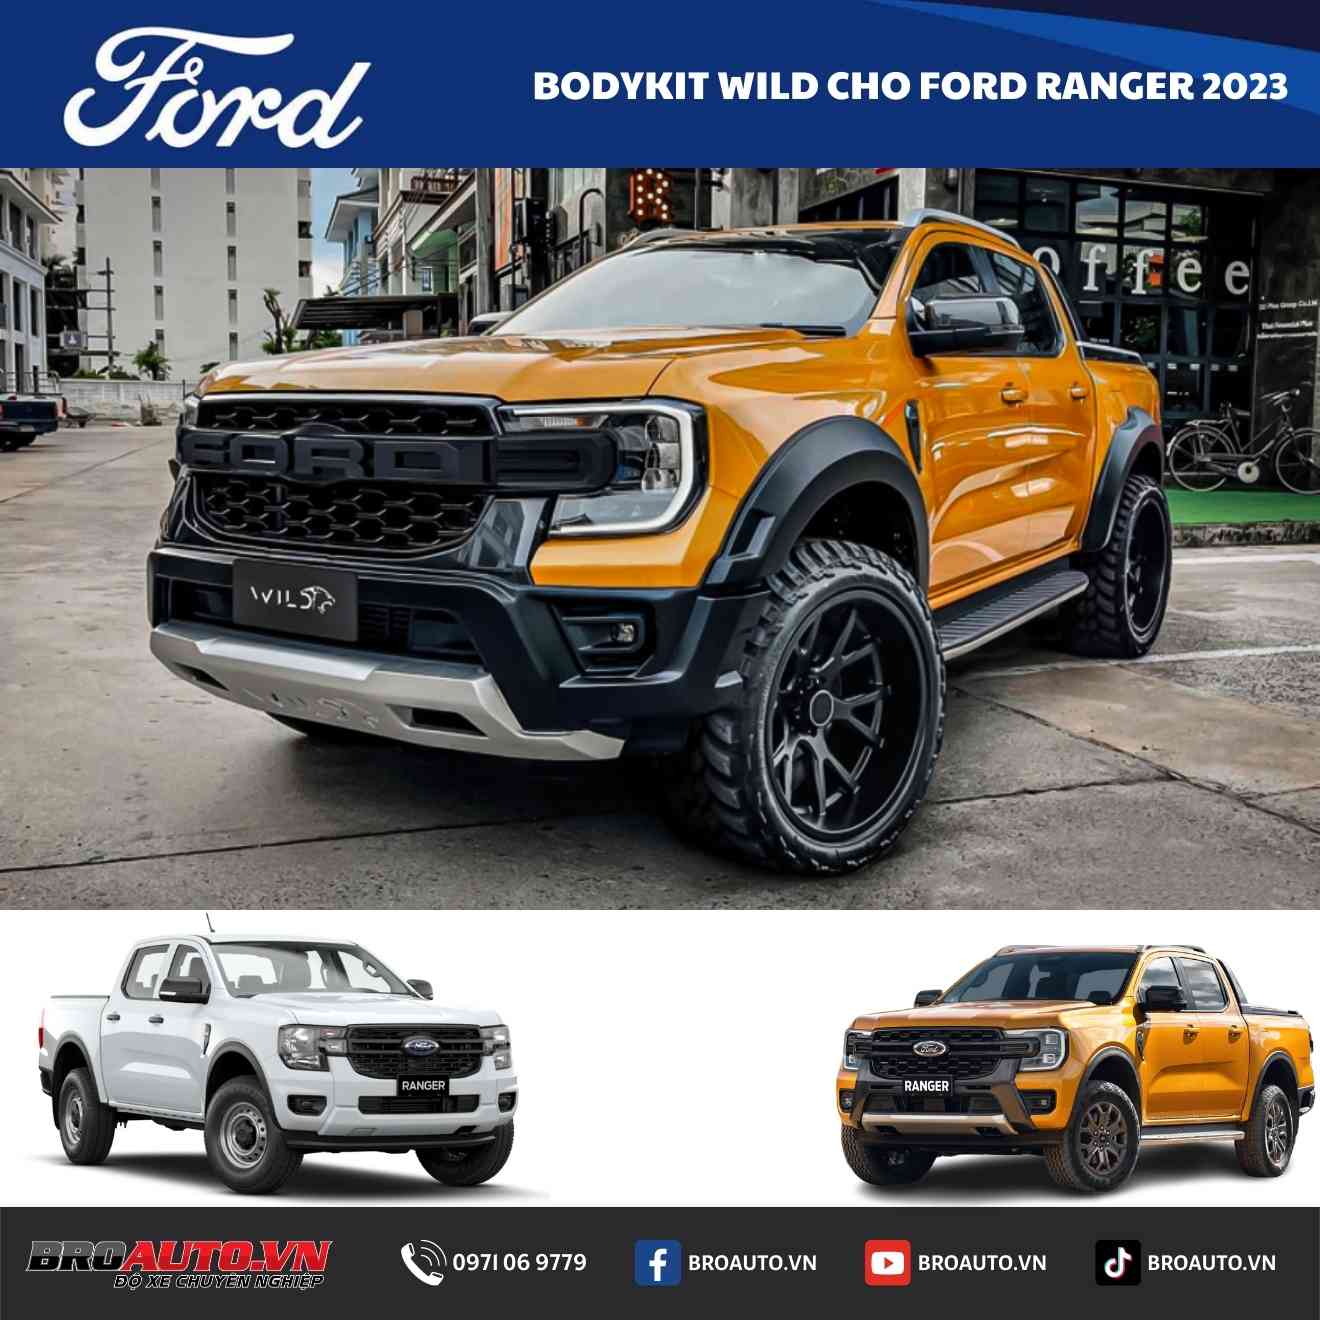 Tổng Hợp Phụ Kiện Đồ Chơi Ford Ranger 2023 Mới Nhất Tại Bro Auto